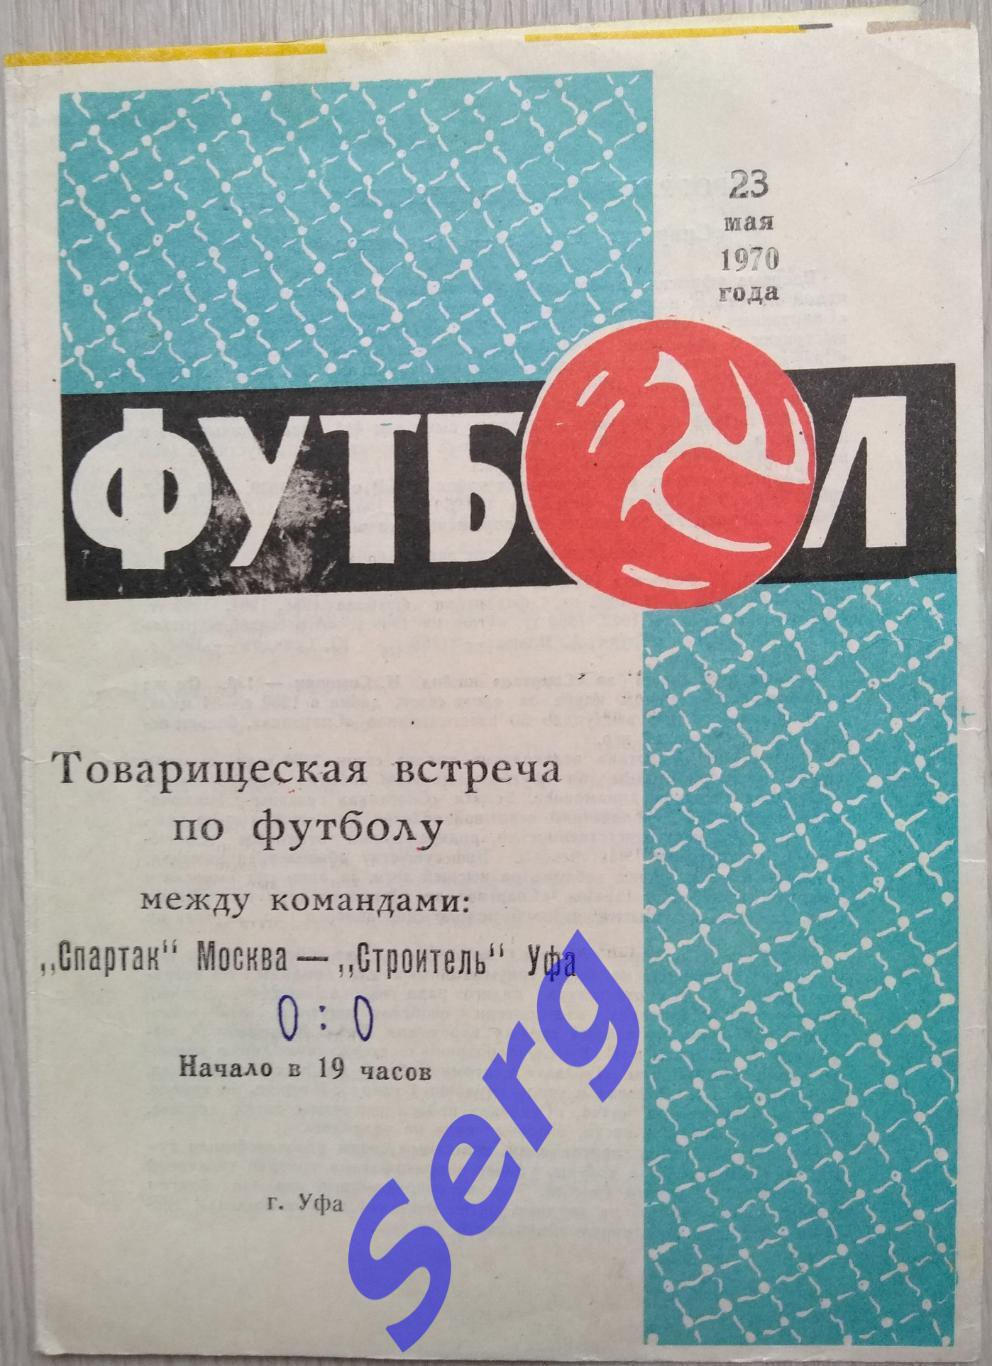 Строитель Уфа - Спартак Москва - 23 мая 1970 год ТМ